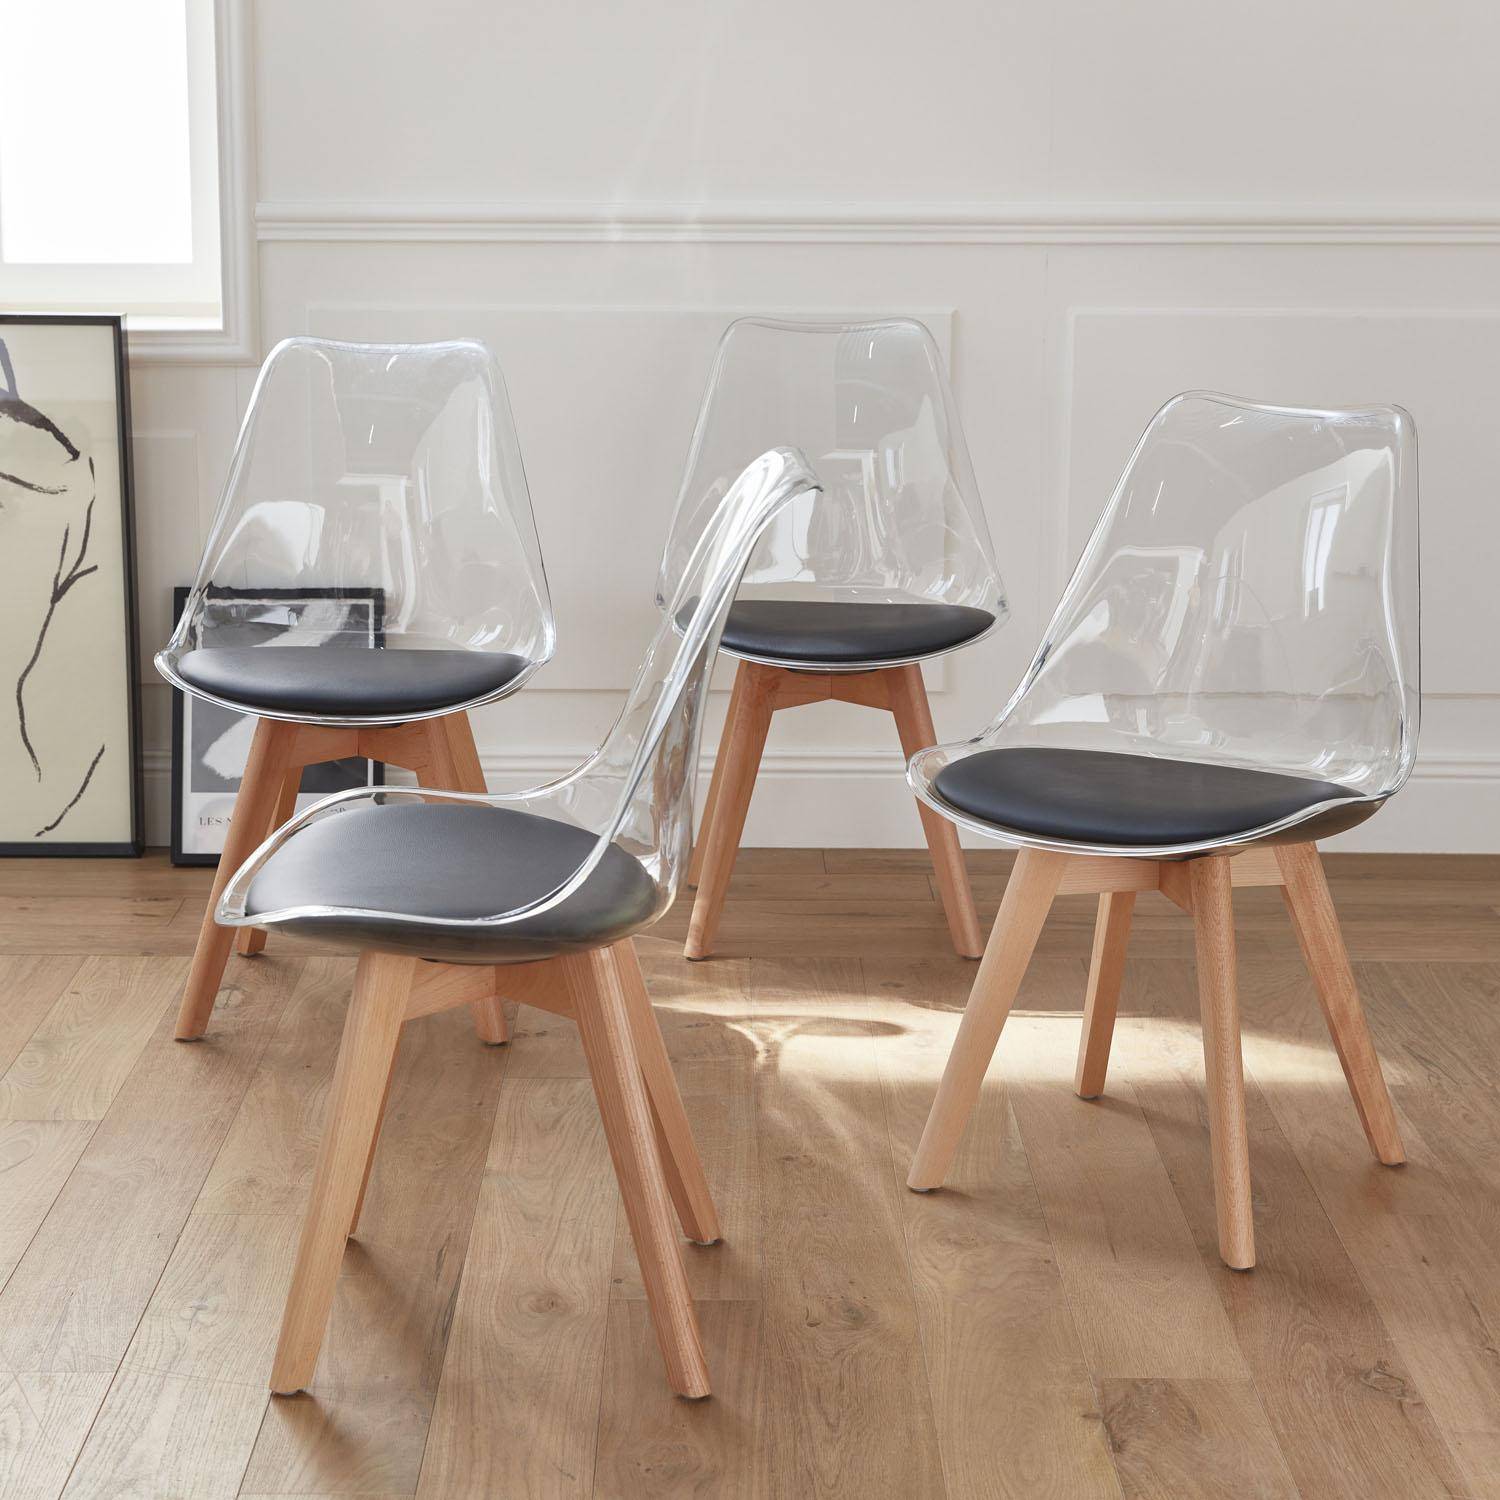 Juego de 4 sillas escandinavas - Lagertha - patas de madera, asientos individuales, cojín negro, carcasa transparente  Photo2